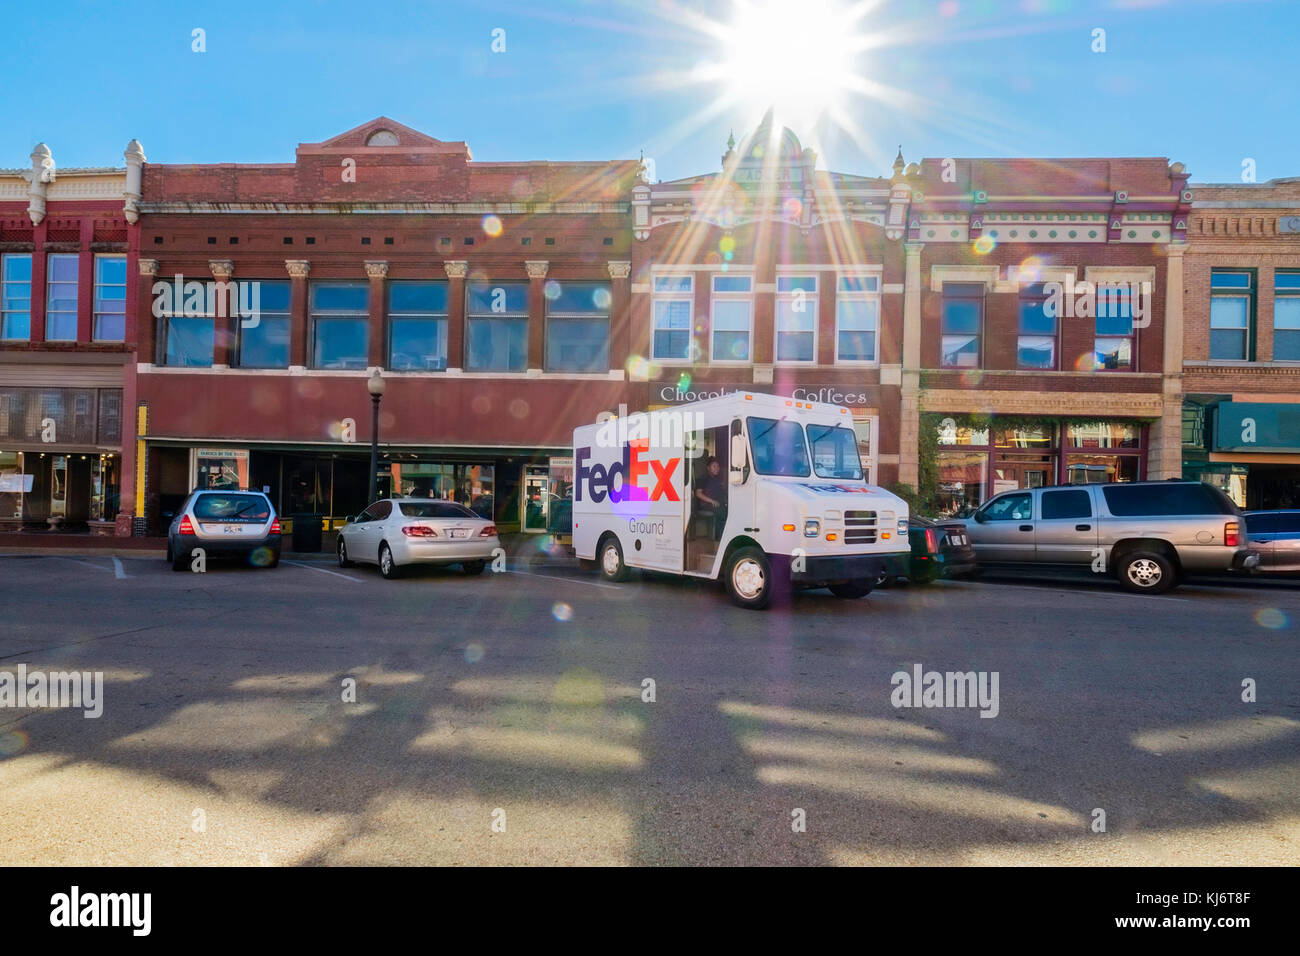 Ein FedEx delivery Truck waren die Guthrie Historic District in Guthrie, Oklahoma, USA. Starke Sonne Flare, die FedEx Lkw unterstreicht. Stockfoto